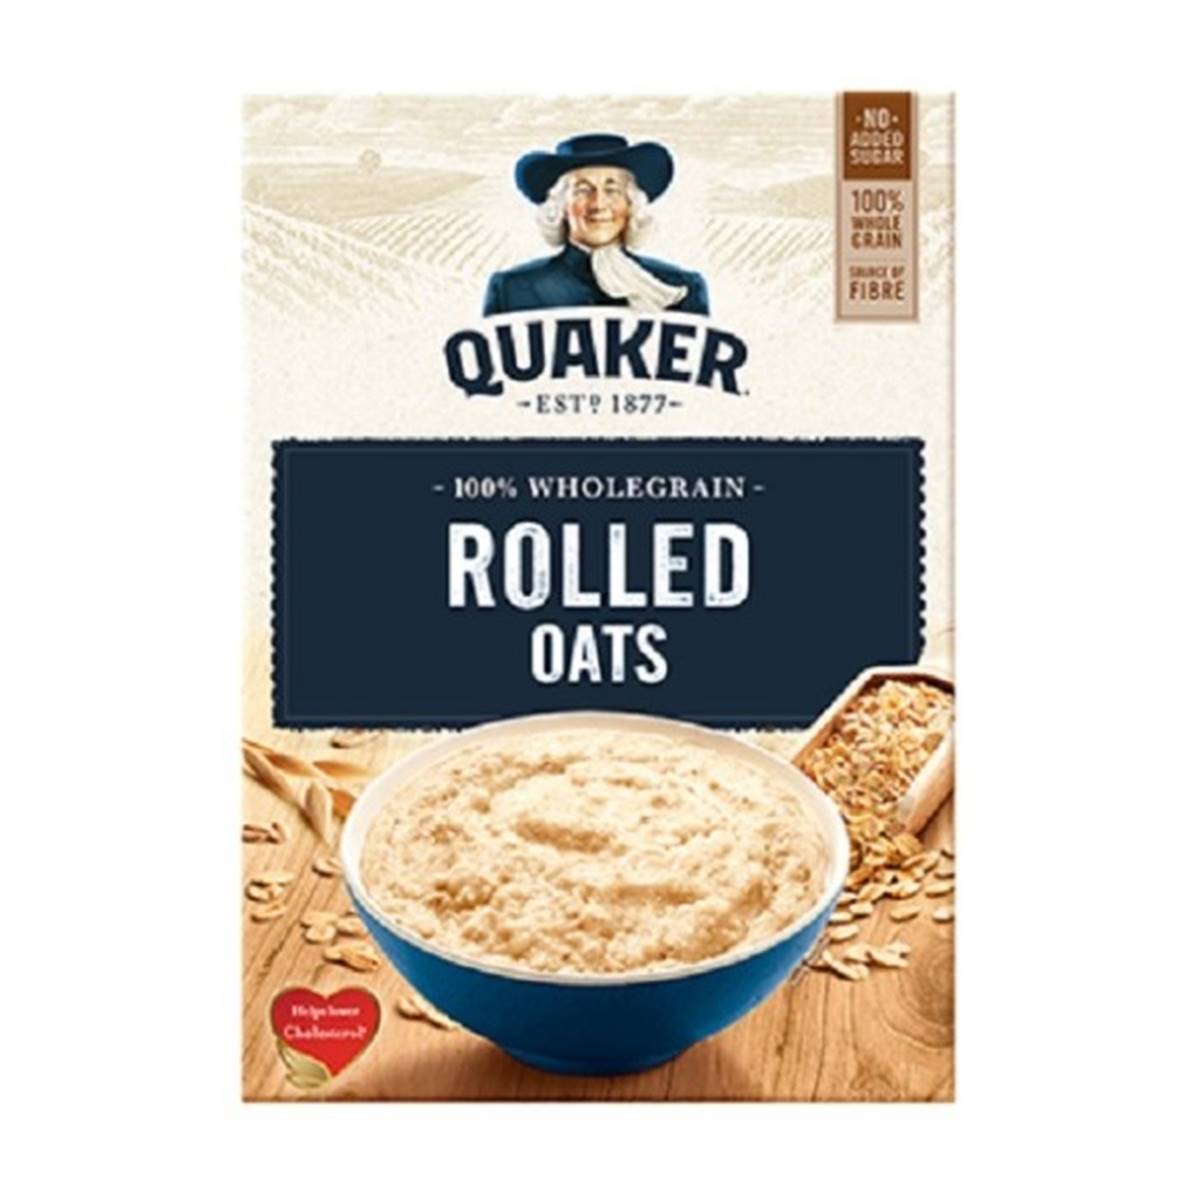 Quaker Rolled Oats